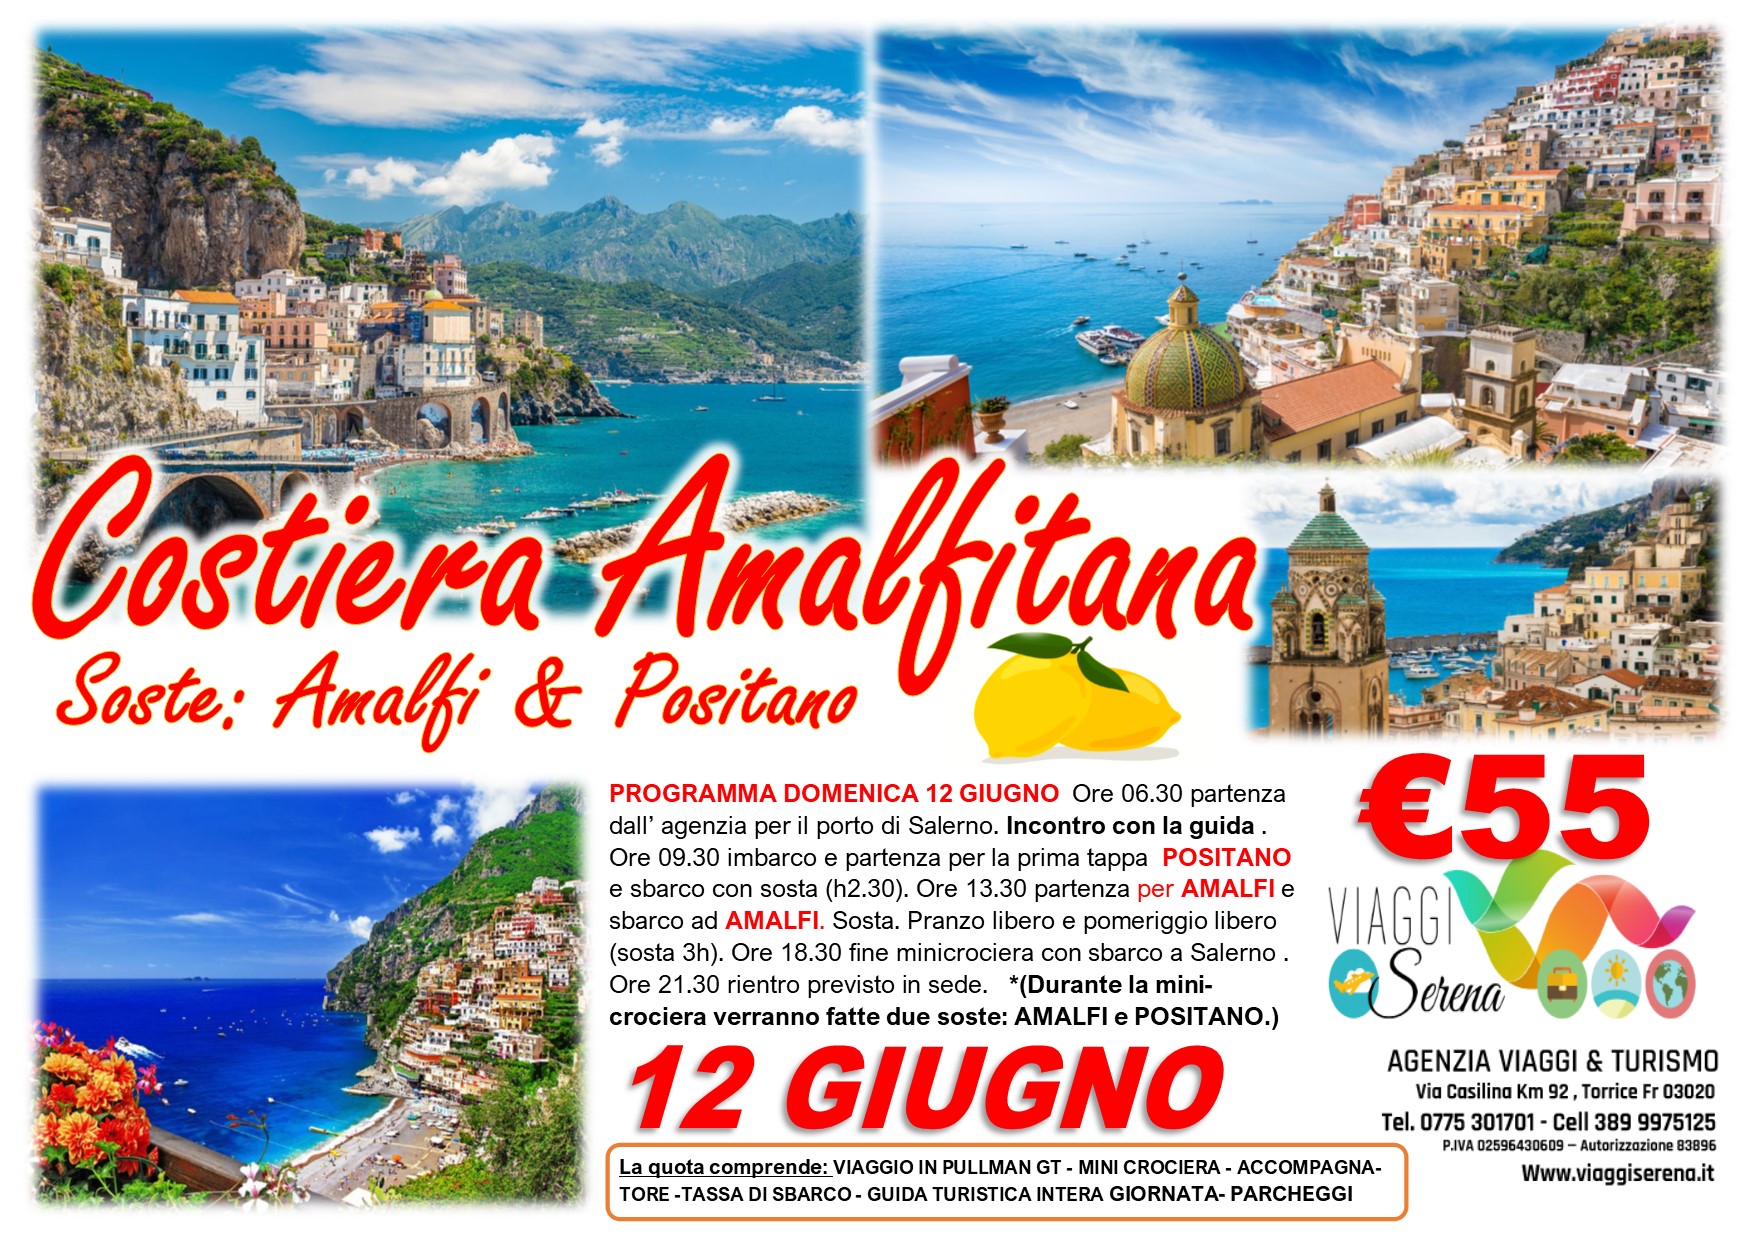 Viaggi di Gruppo: mini crociera Costiera Amalfitana “Amalfi & Positano” 12 Giugno €55,00